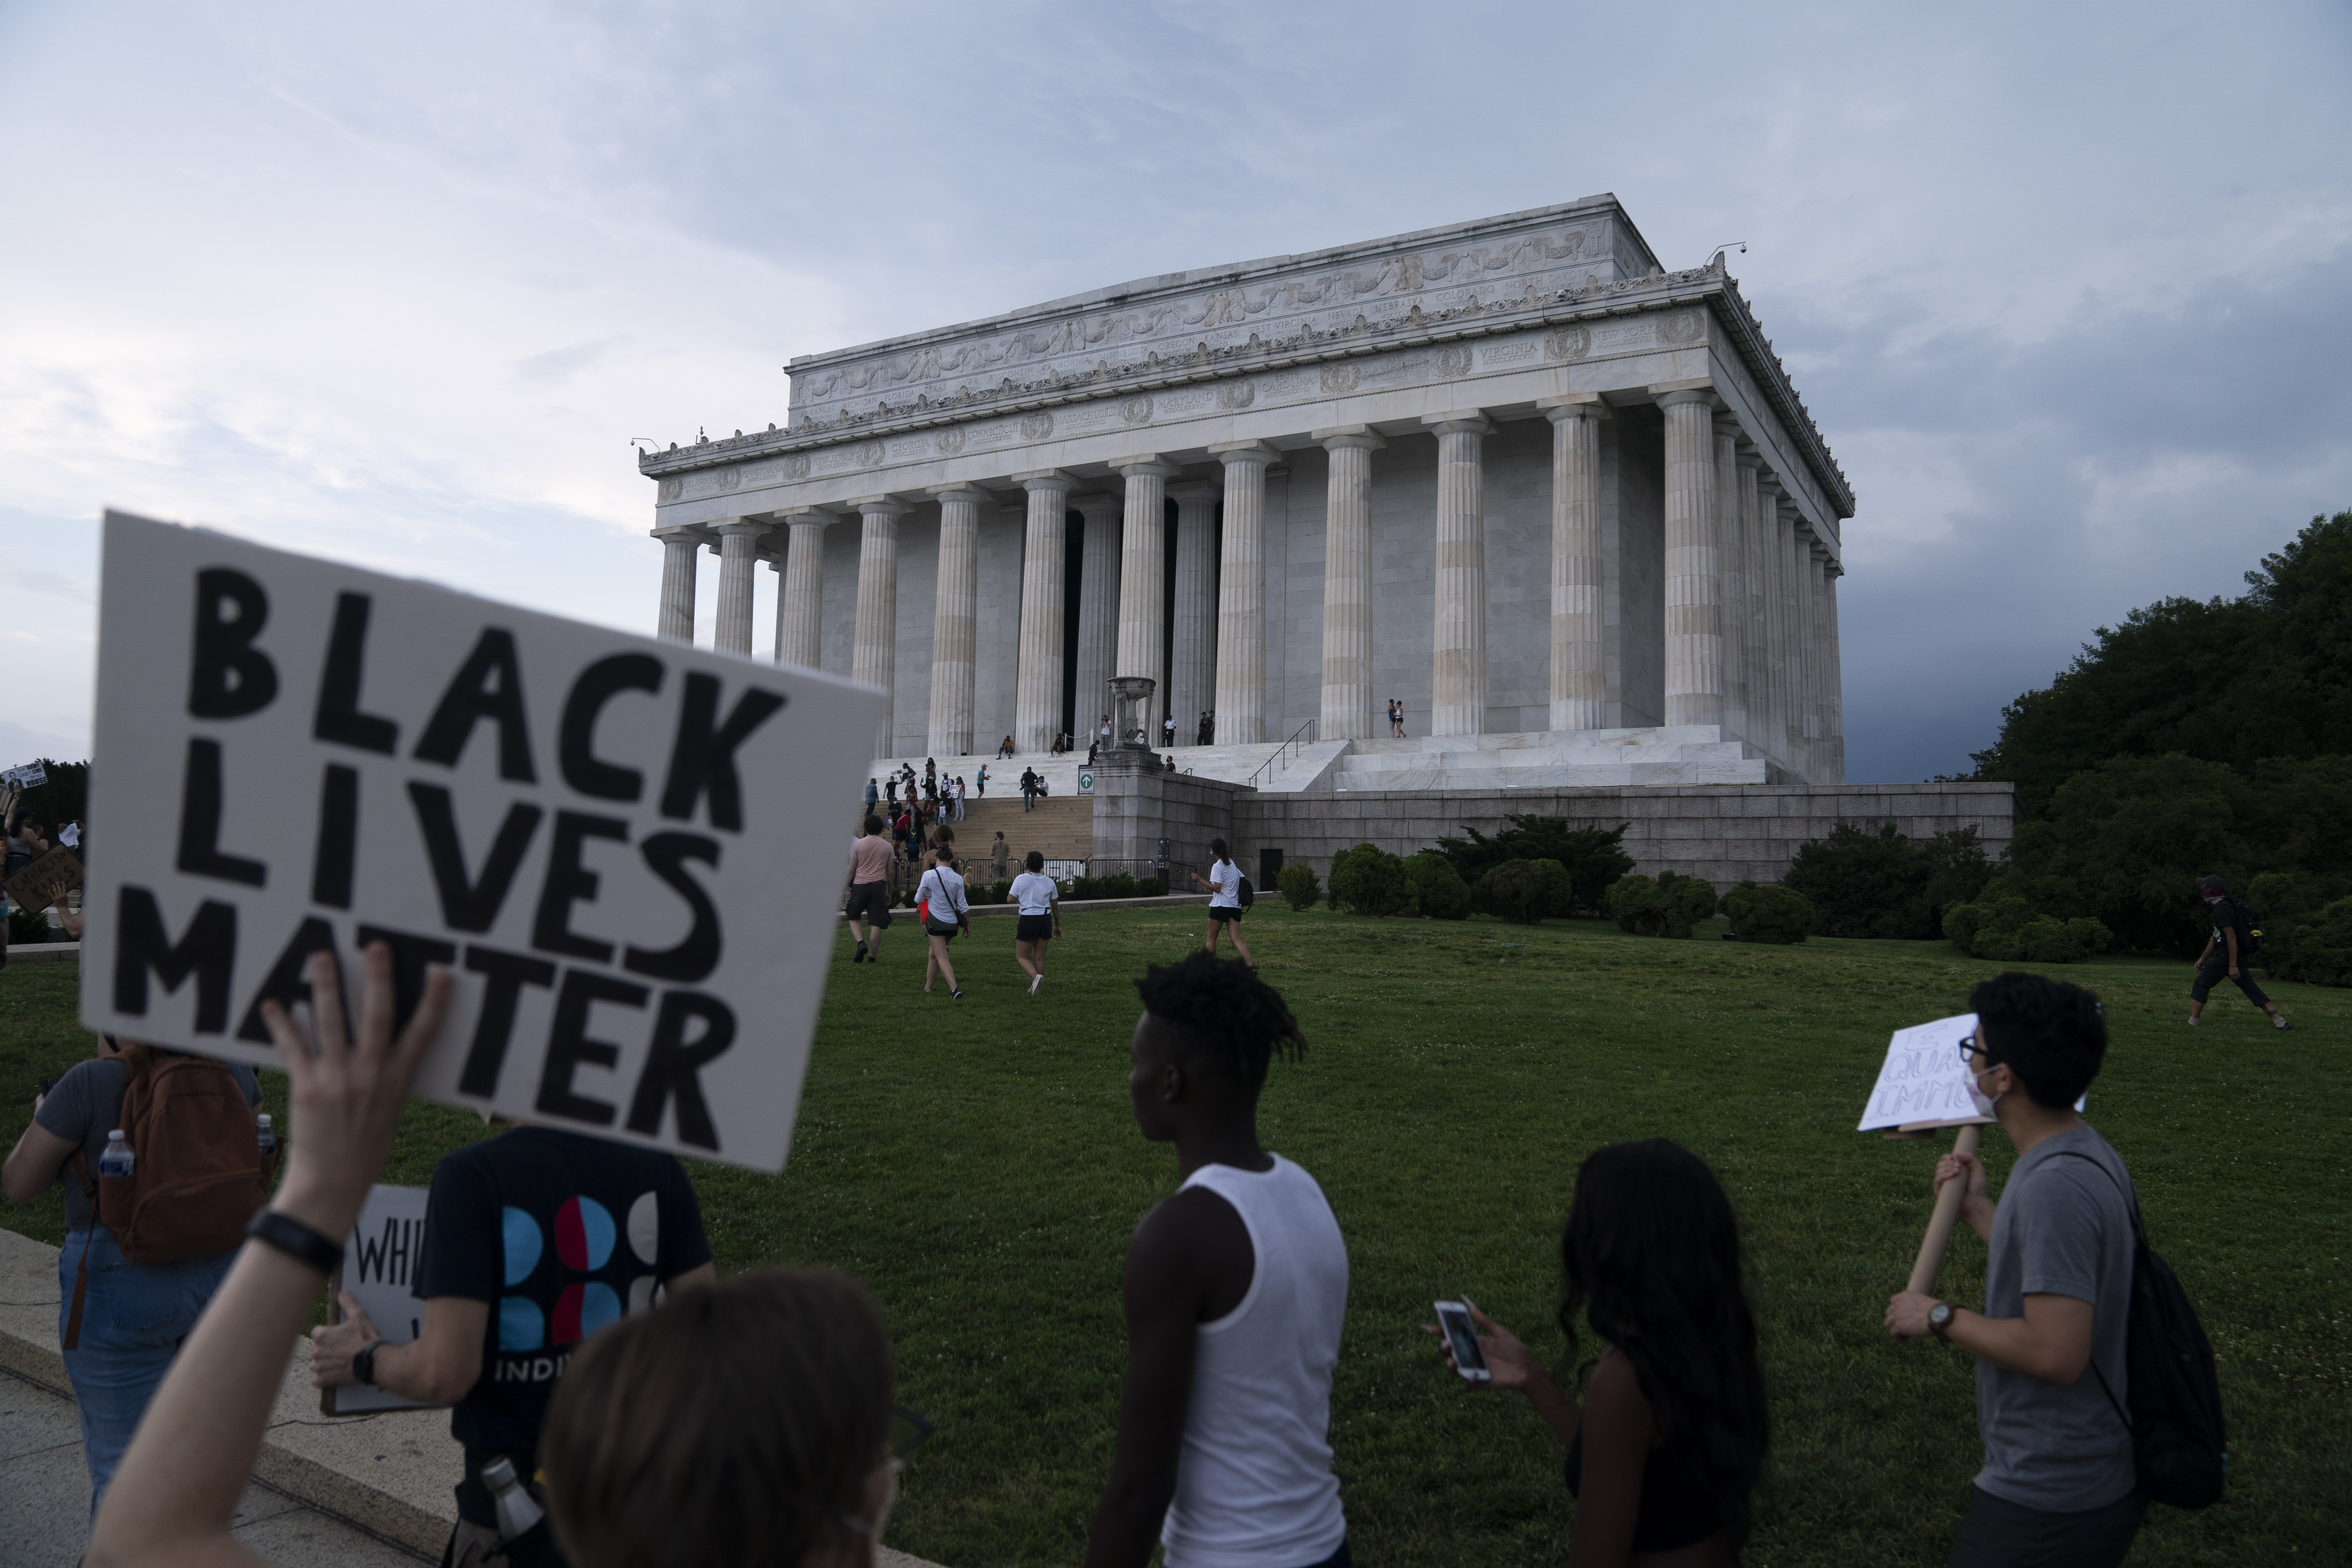 El movimiento Black Lives Matter se enfrenta al supremacismo blanco estadounidense.